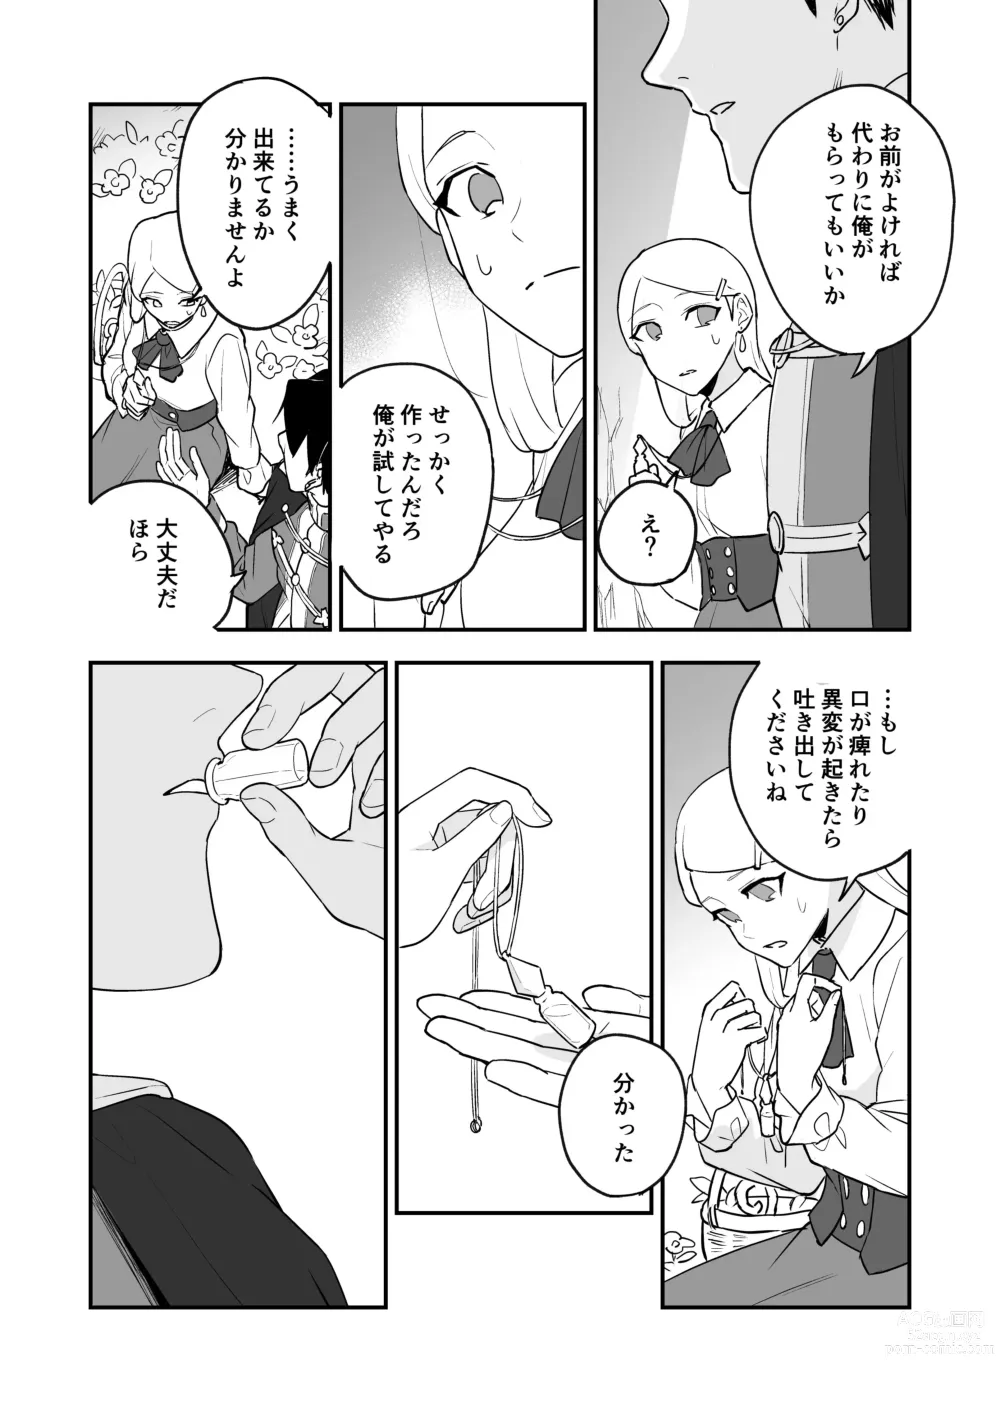 Page 11 of doujinshi Himitsu no Shirayuri